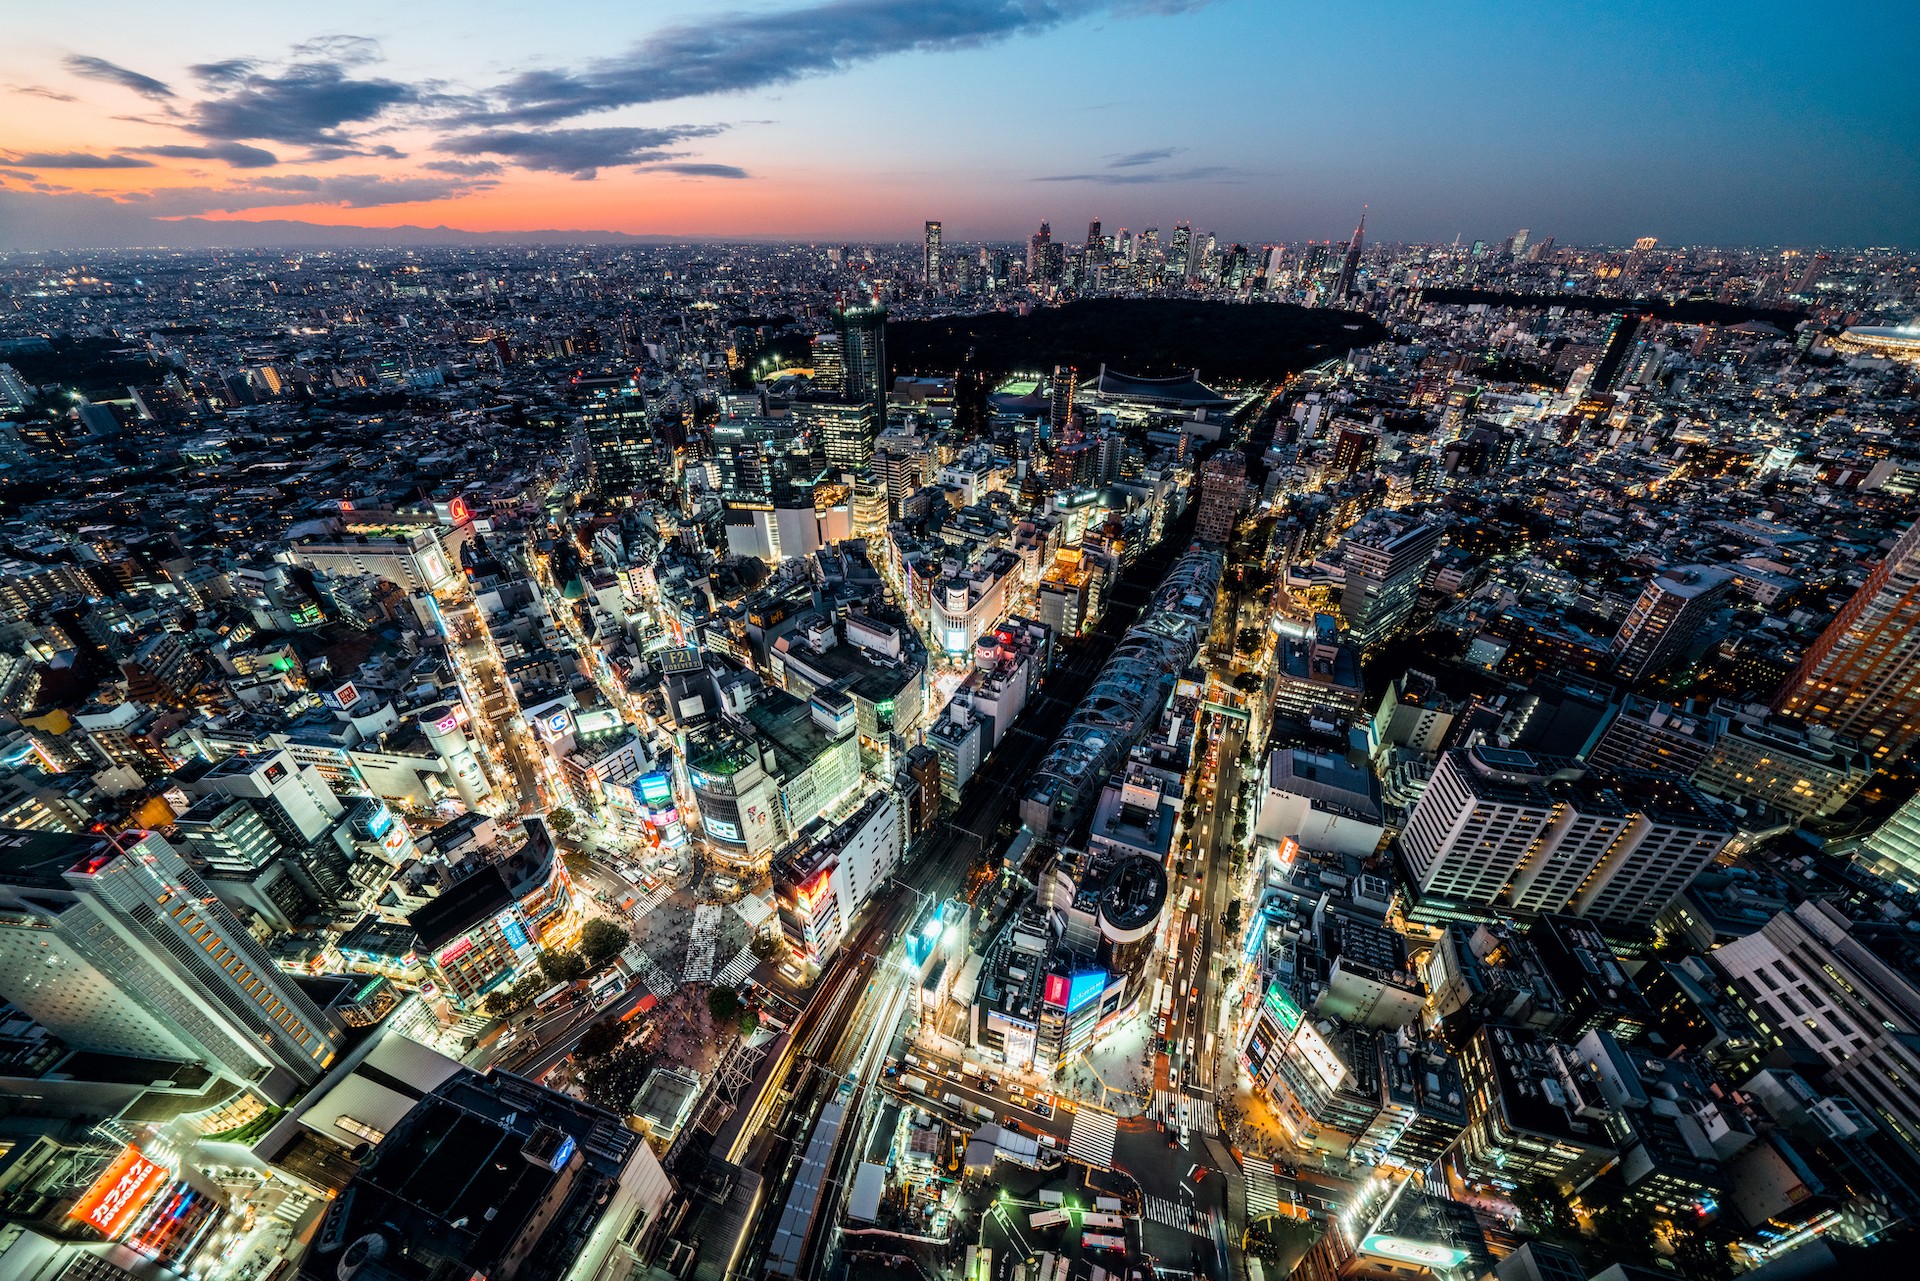 
Tokyo là siêu đô thị lớn nhất thế giới
